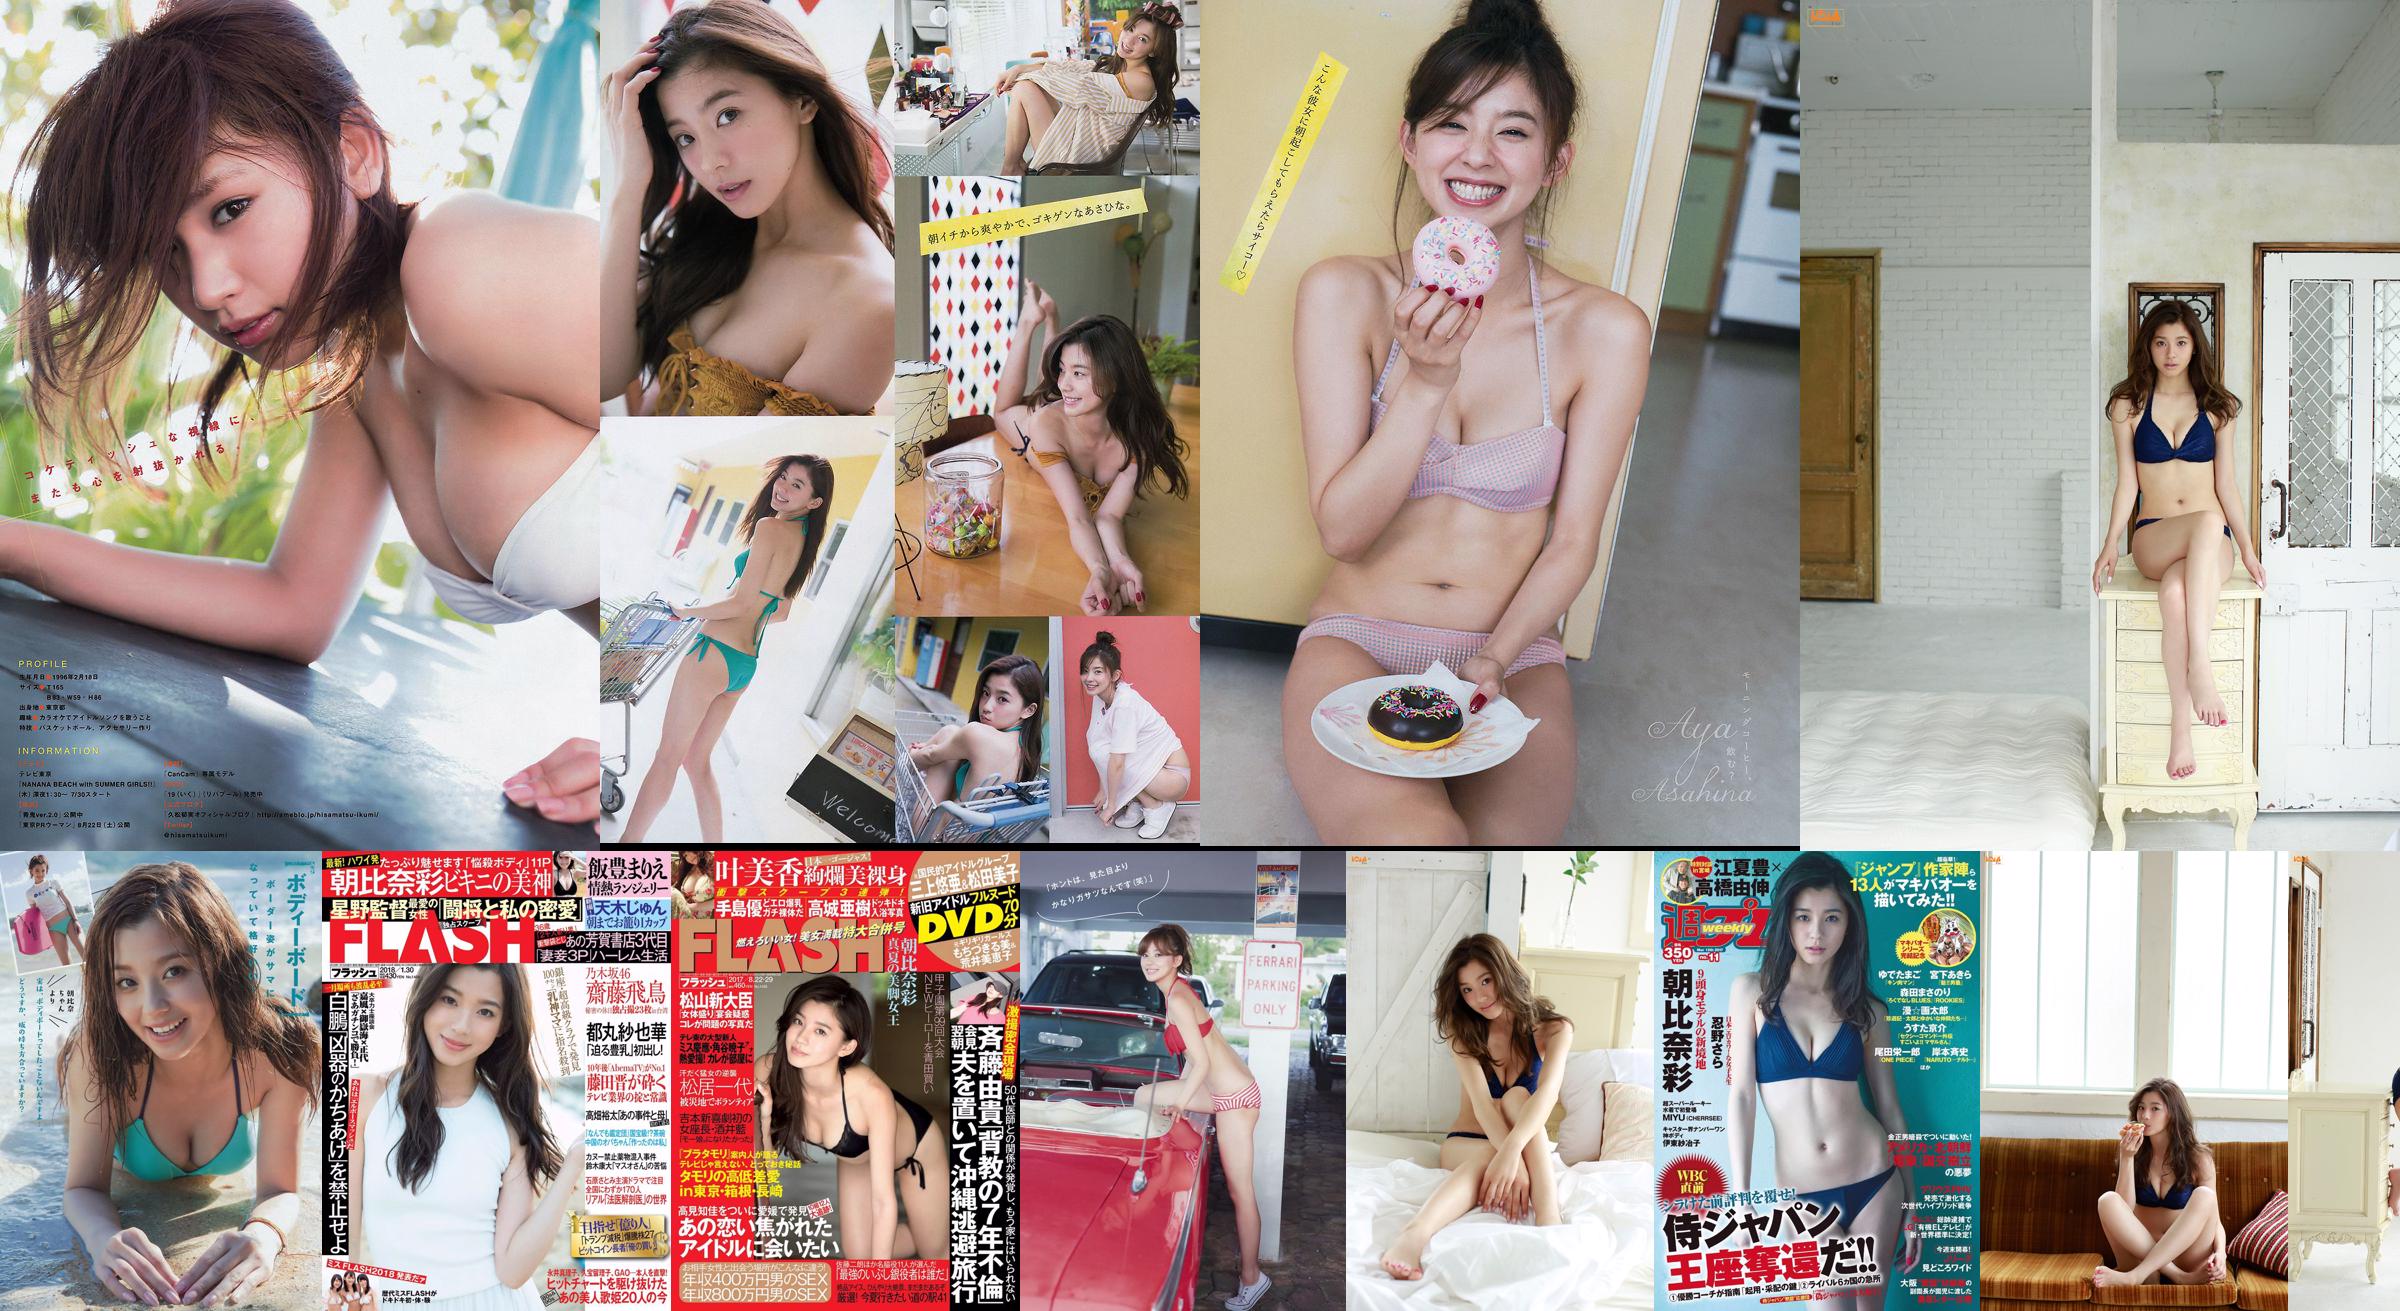 [FLASH] Aya Asahina Haruna Kawaguchi Ruri Ena Mina Asakura 2015.10.27 Foto Moshi No.9eef18 Pagina 1